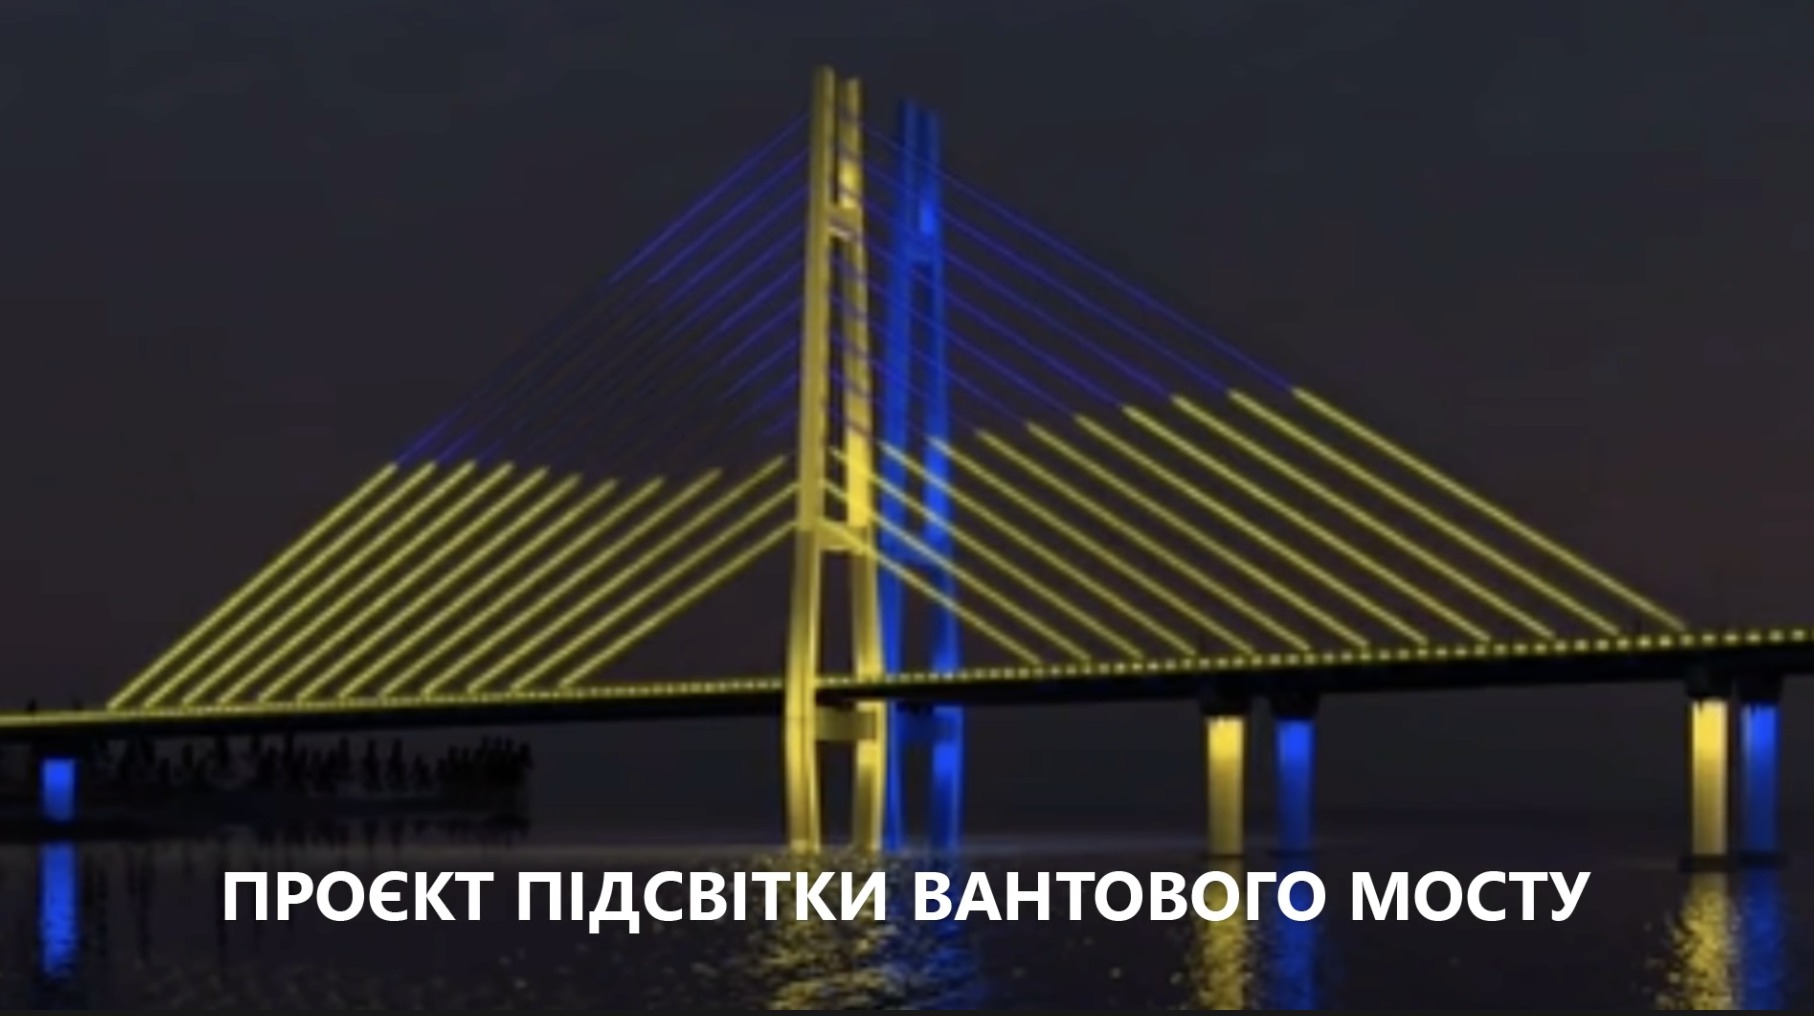 Новый запорожский вантовый мост красиво подсветят (Видео)